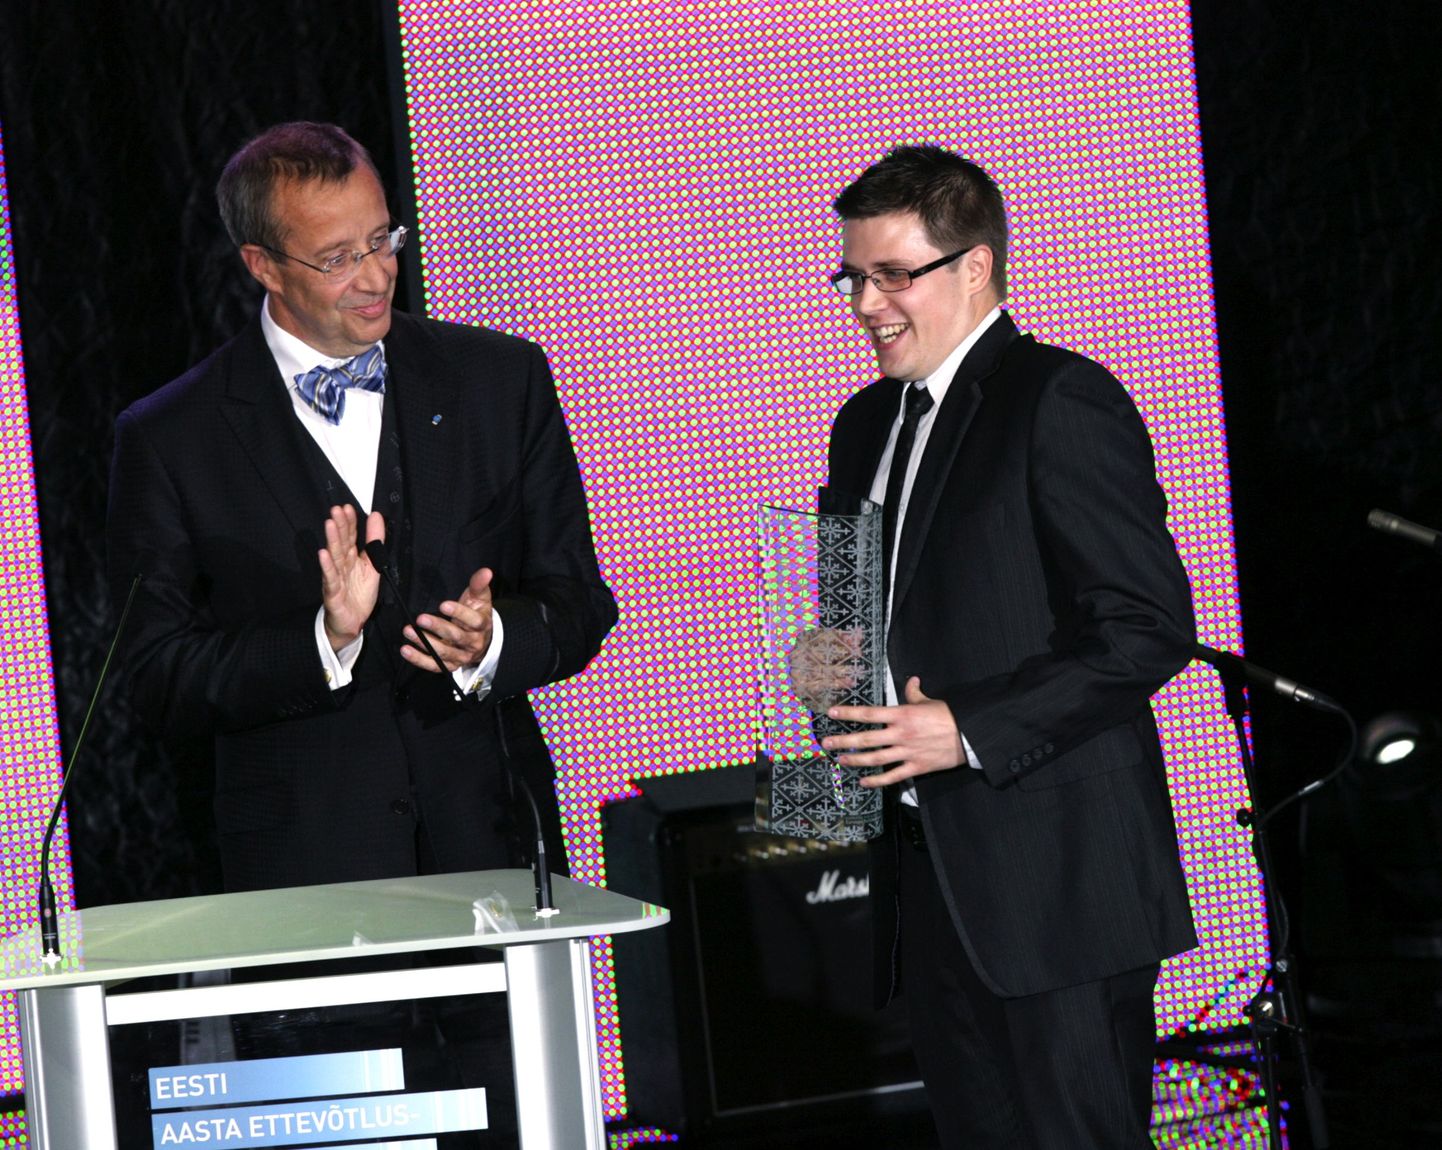 Ettevõtluse Arendamise Sihtasutuse (EAS) väljaantava Ettevõtluse Auhind 2011 peavõitjaks pärjati OÜ Fortumo.